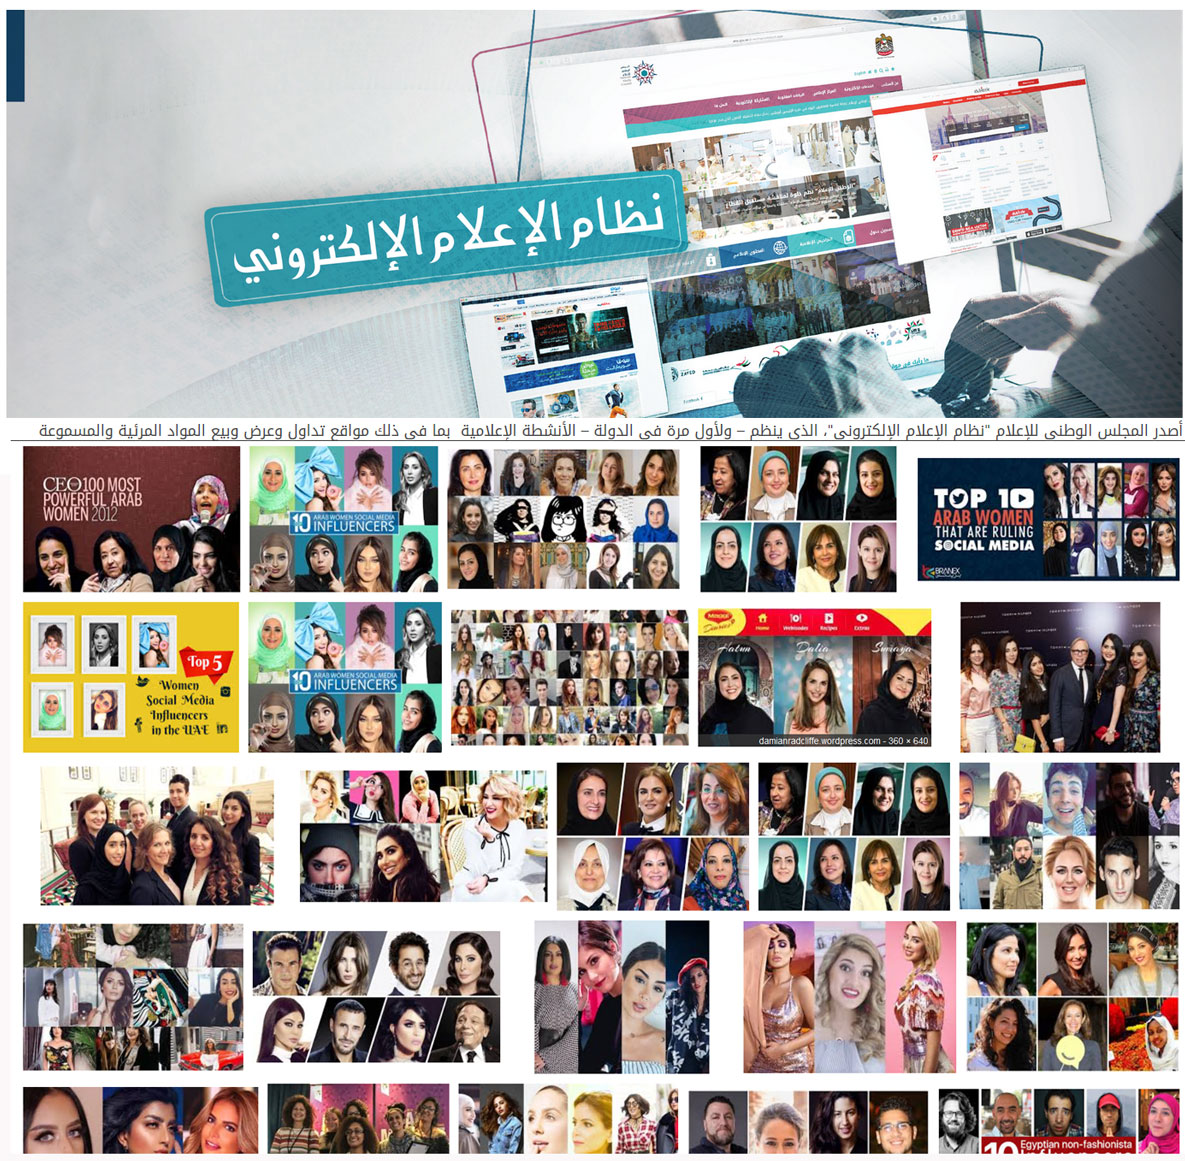 الإمارات إلزام المؤثرين على وسائل التواصل الاجتماعي بالحصول على رخصة